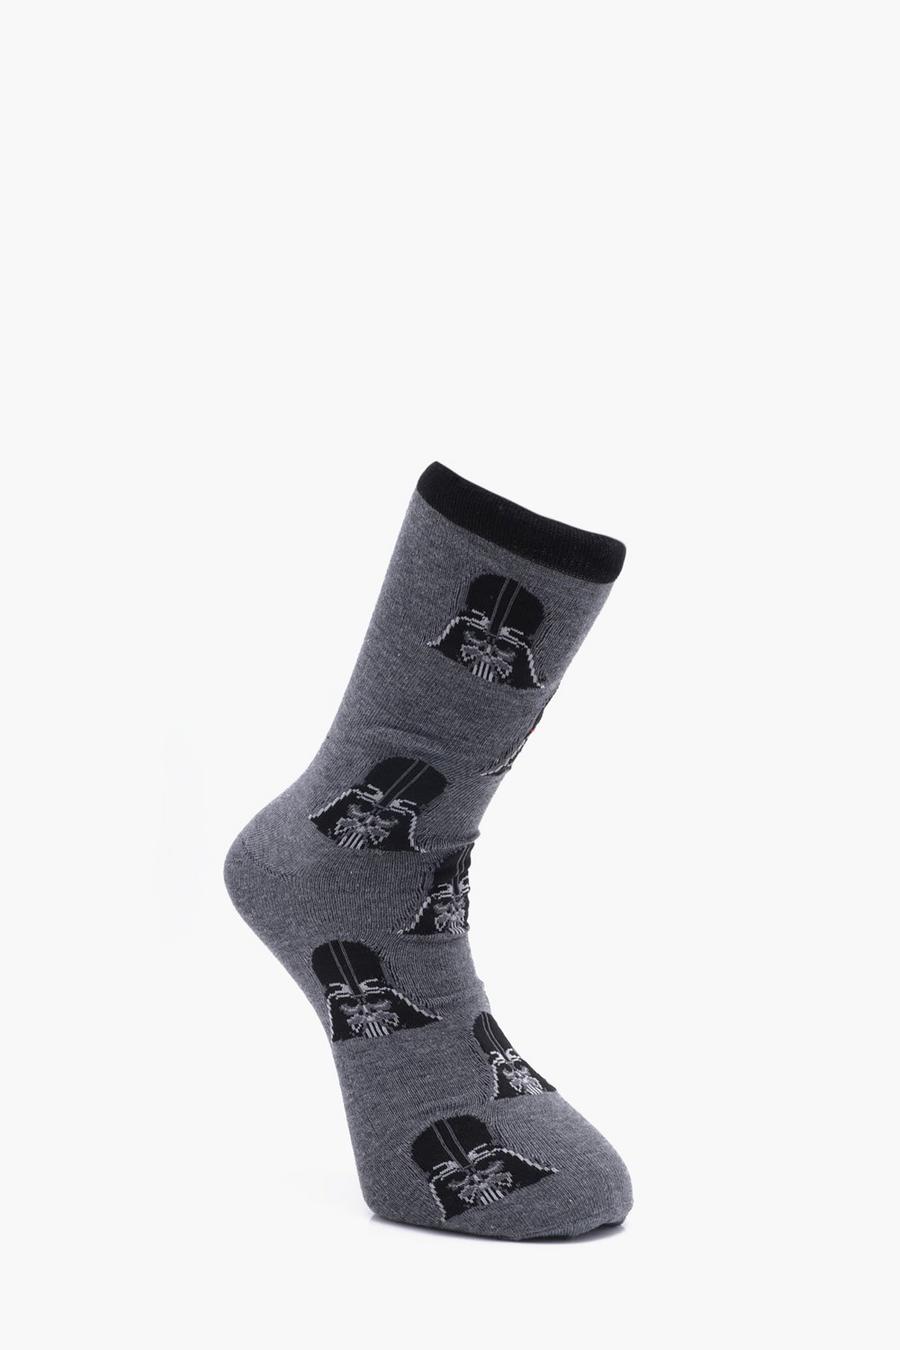 Star Wars Darth Vader Socks, Grey image number 1